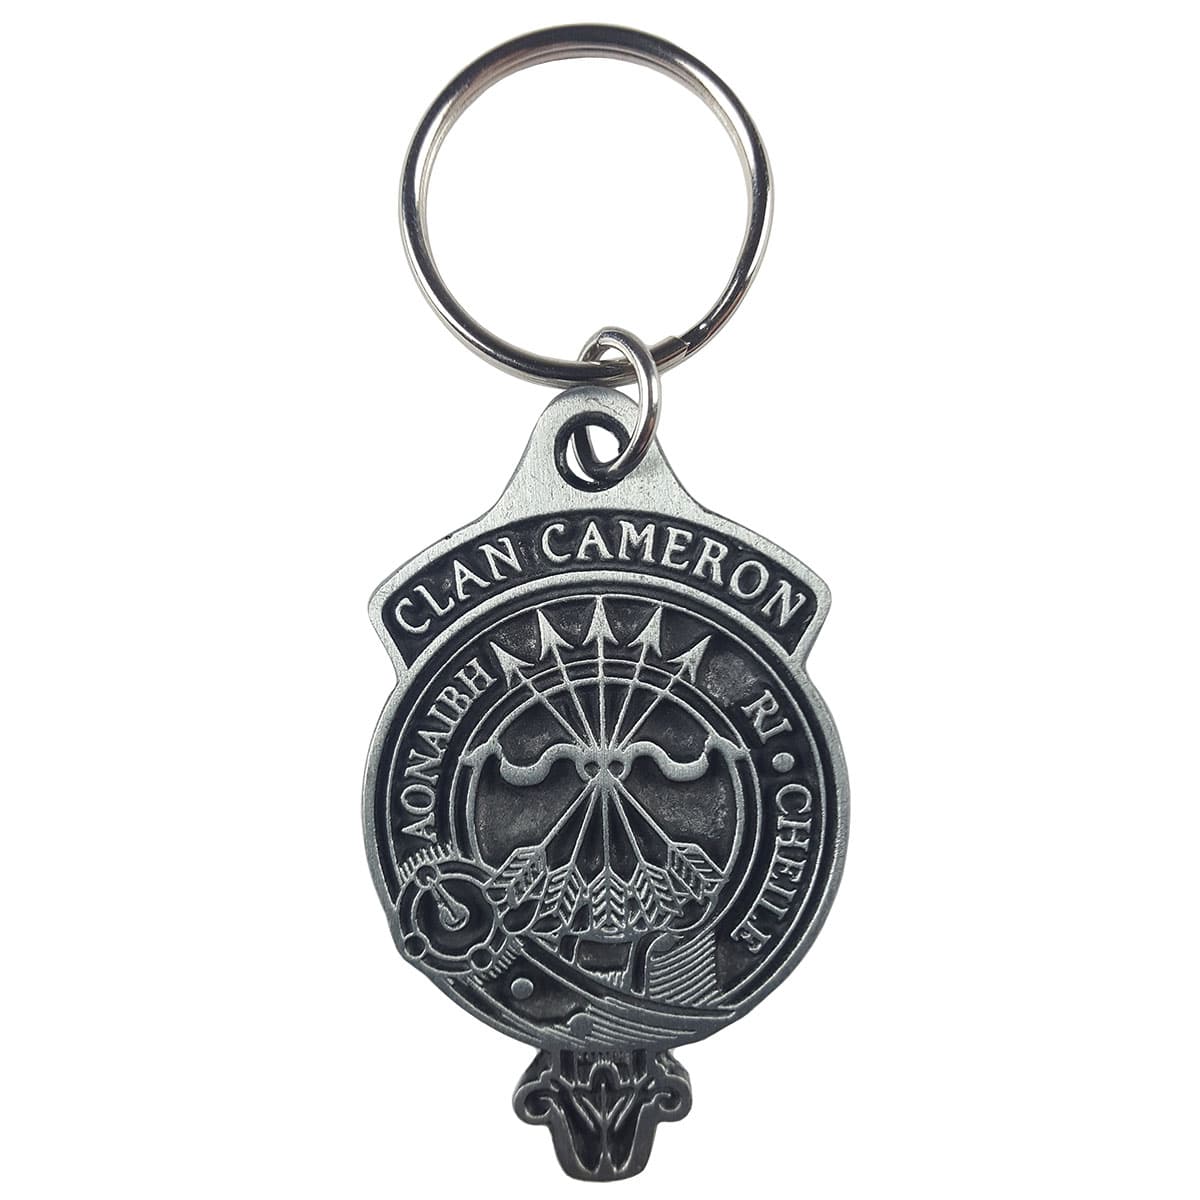 A Cameron clan keychain